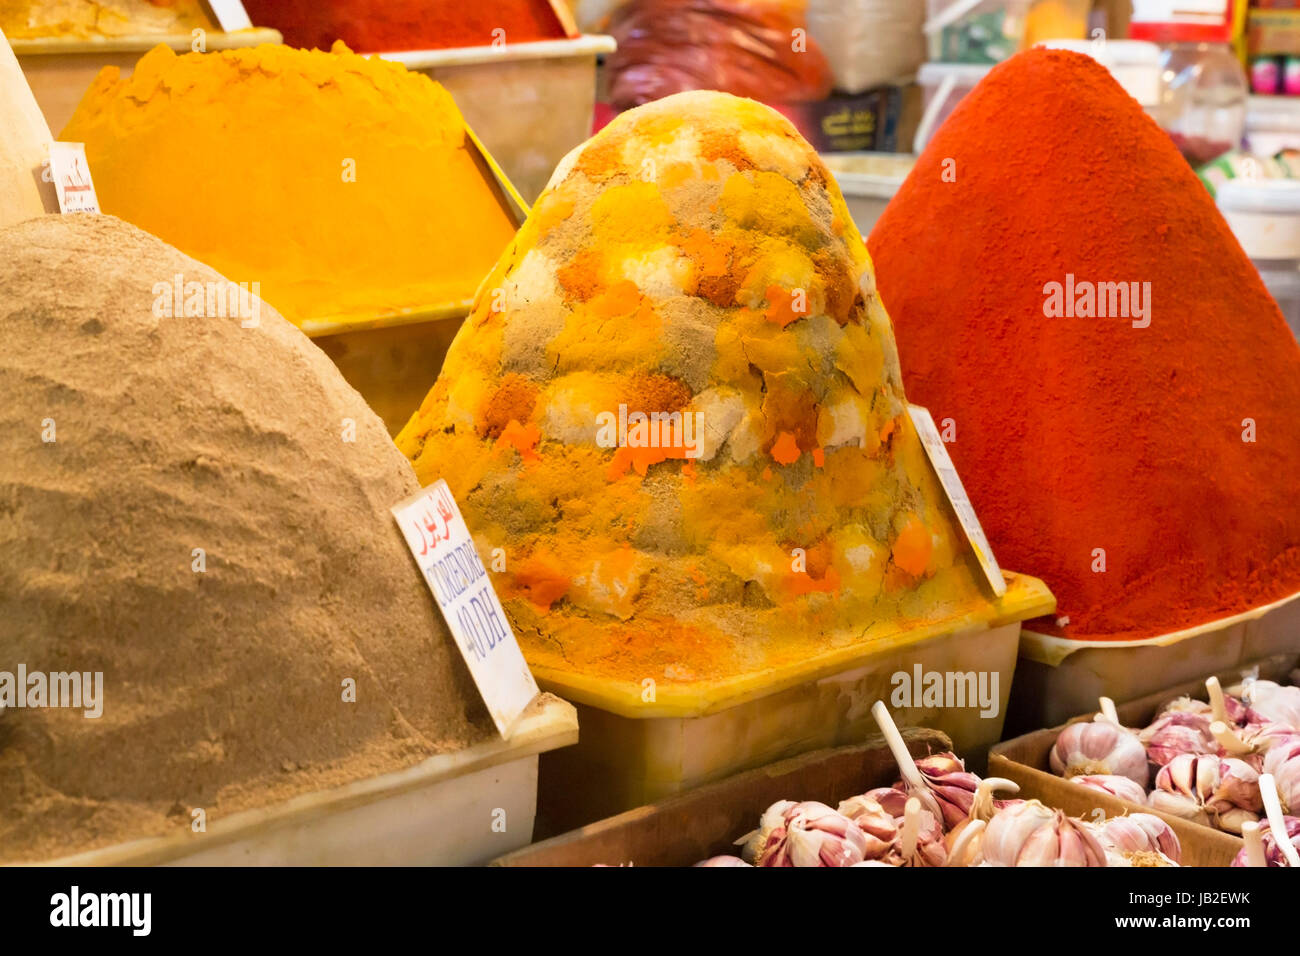 Gewürze an einem Marktstand in Marokko Stock Photo